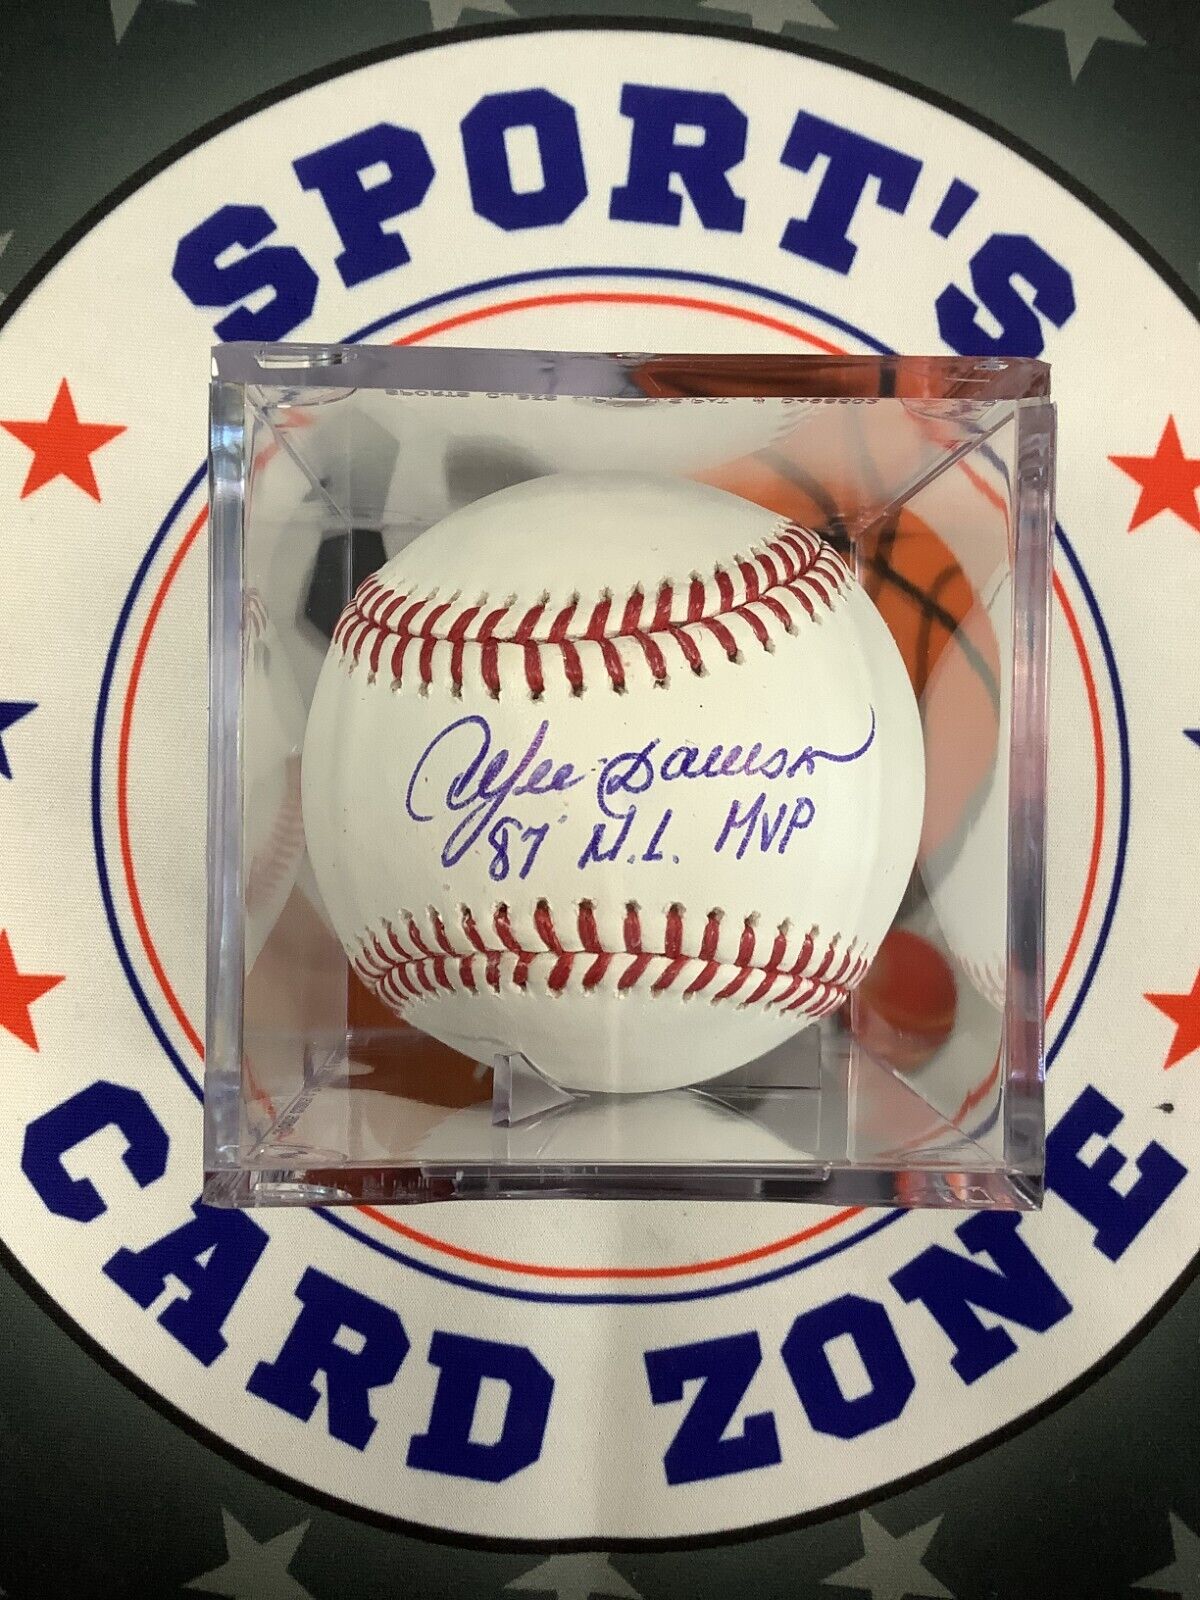 Andre Dawson Autographed Baseball 87 NL MVP Inscription JSA COA